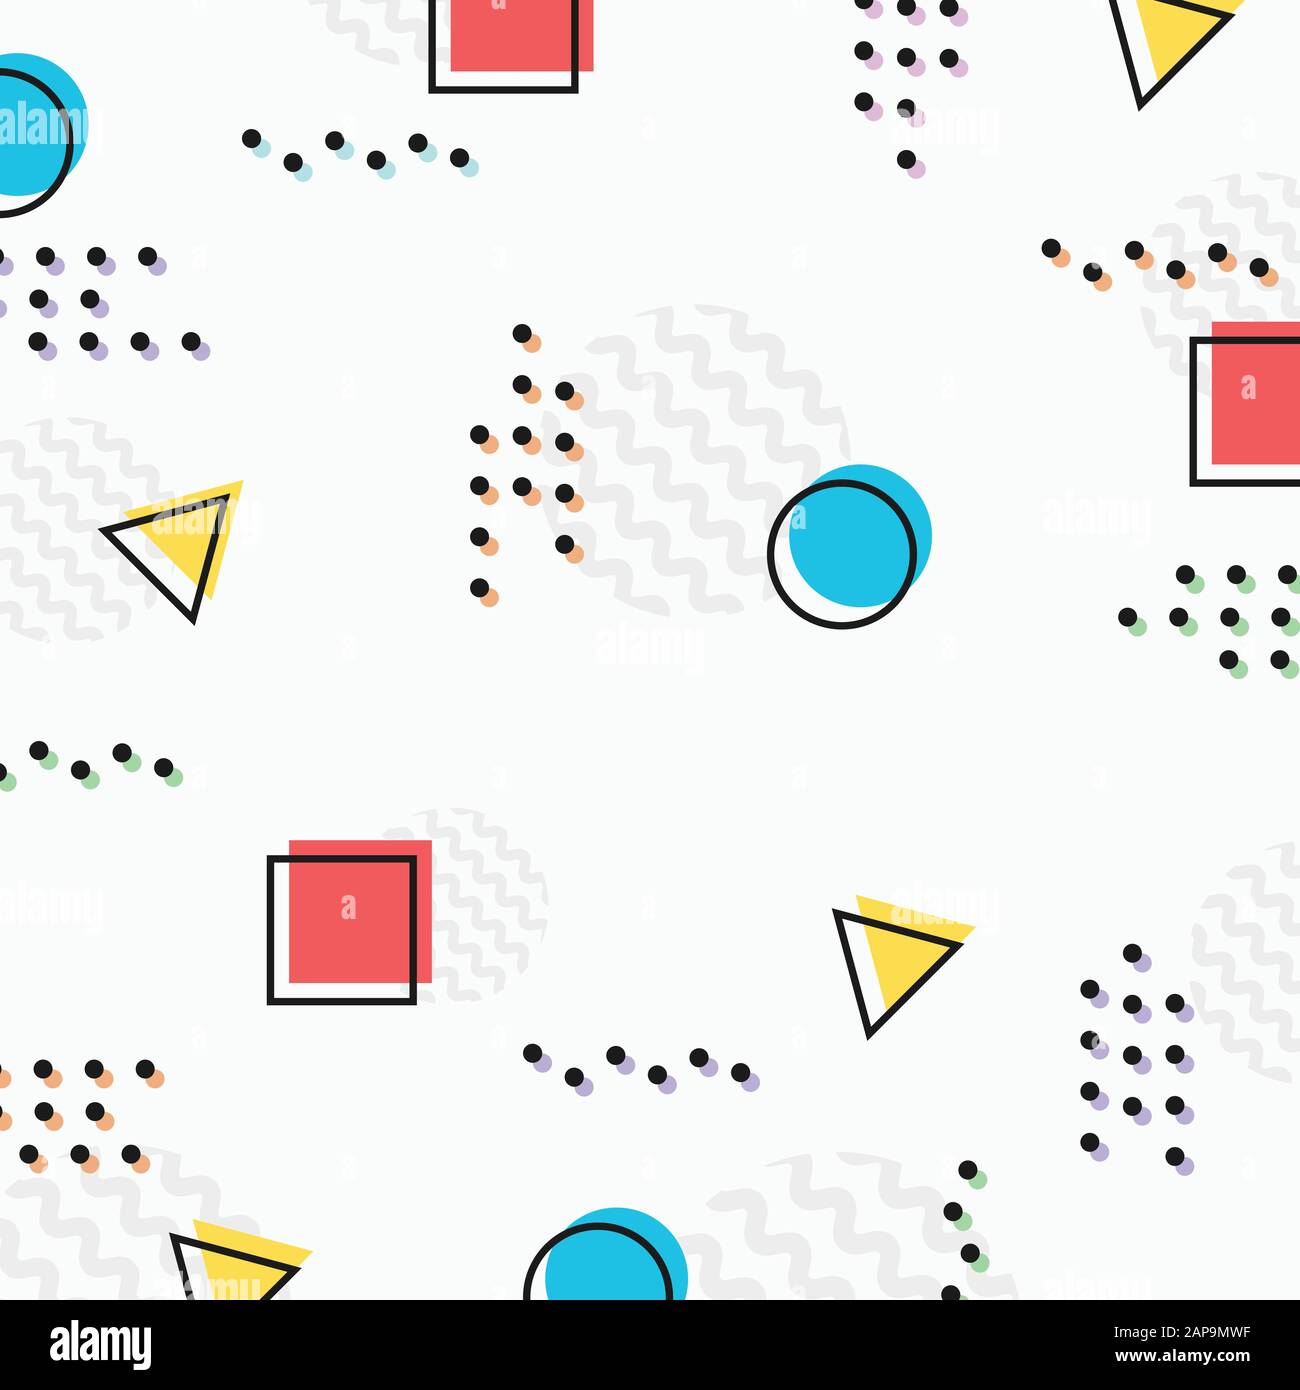 Abstraktes, farbenfrohes geometrisches Muster mit dekorativem Hintergrund mit halber Punktfarbe. Verwendung für Werbung, Poster, Vorlage, Design, Cover. Illustration Vector eps10 Stock Vektor